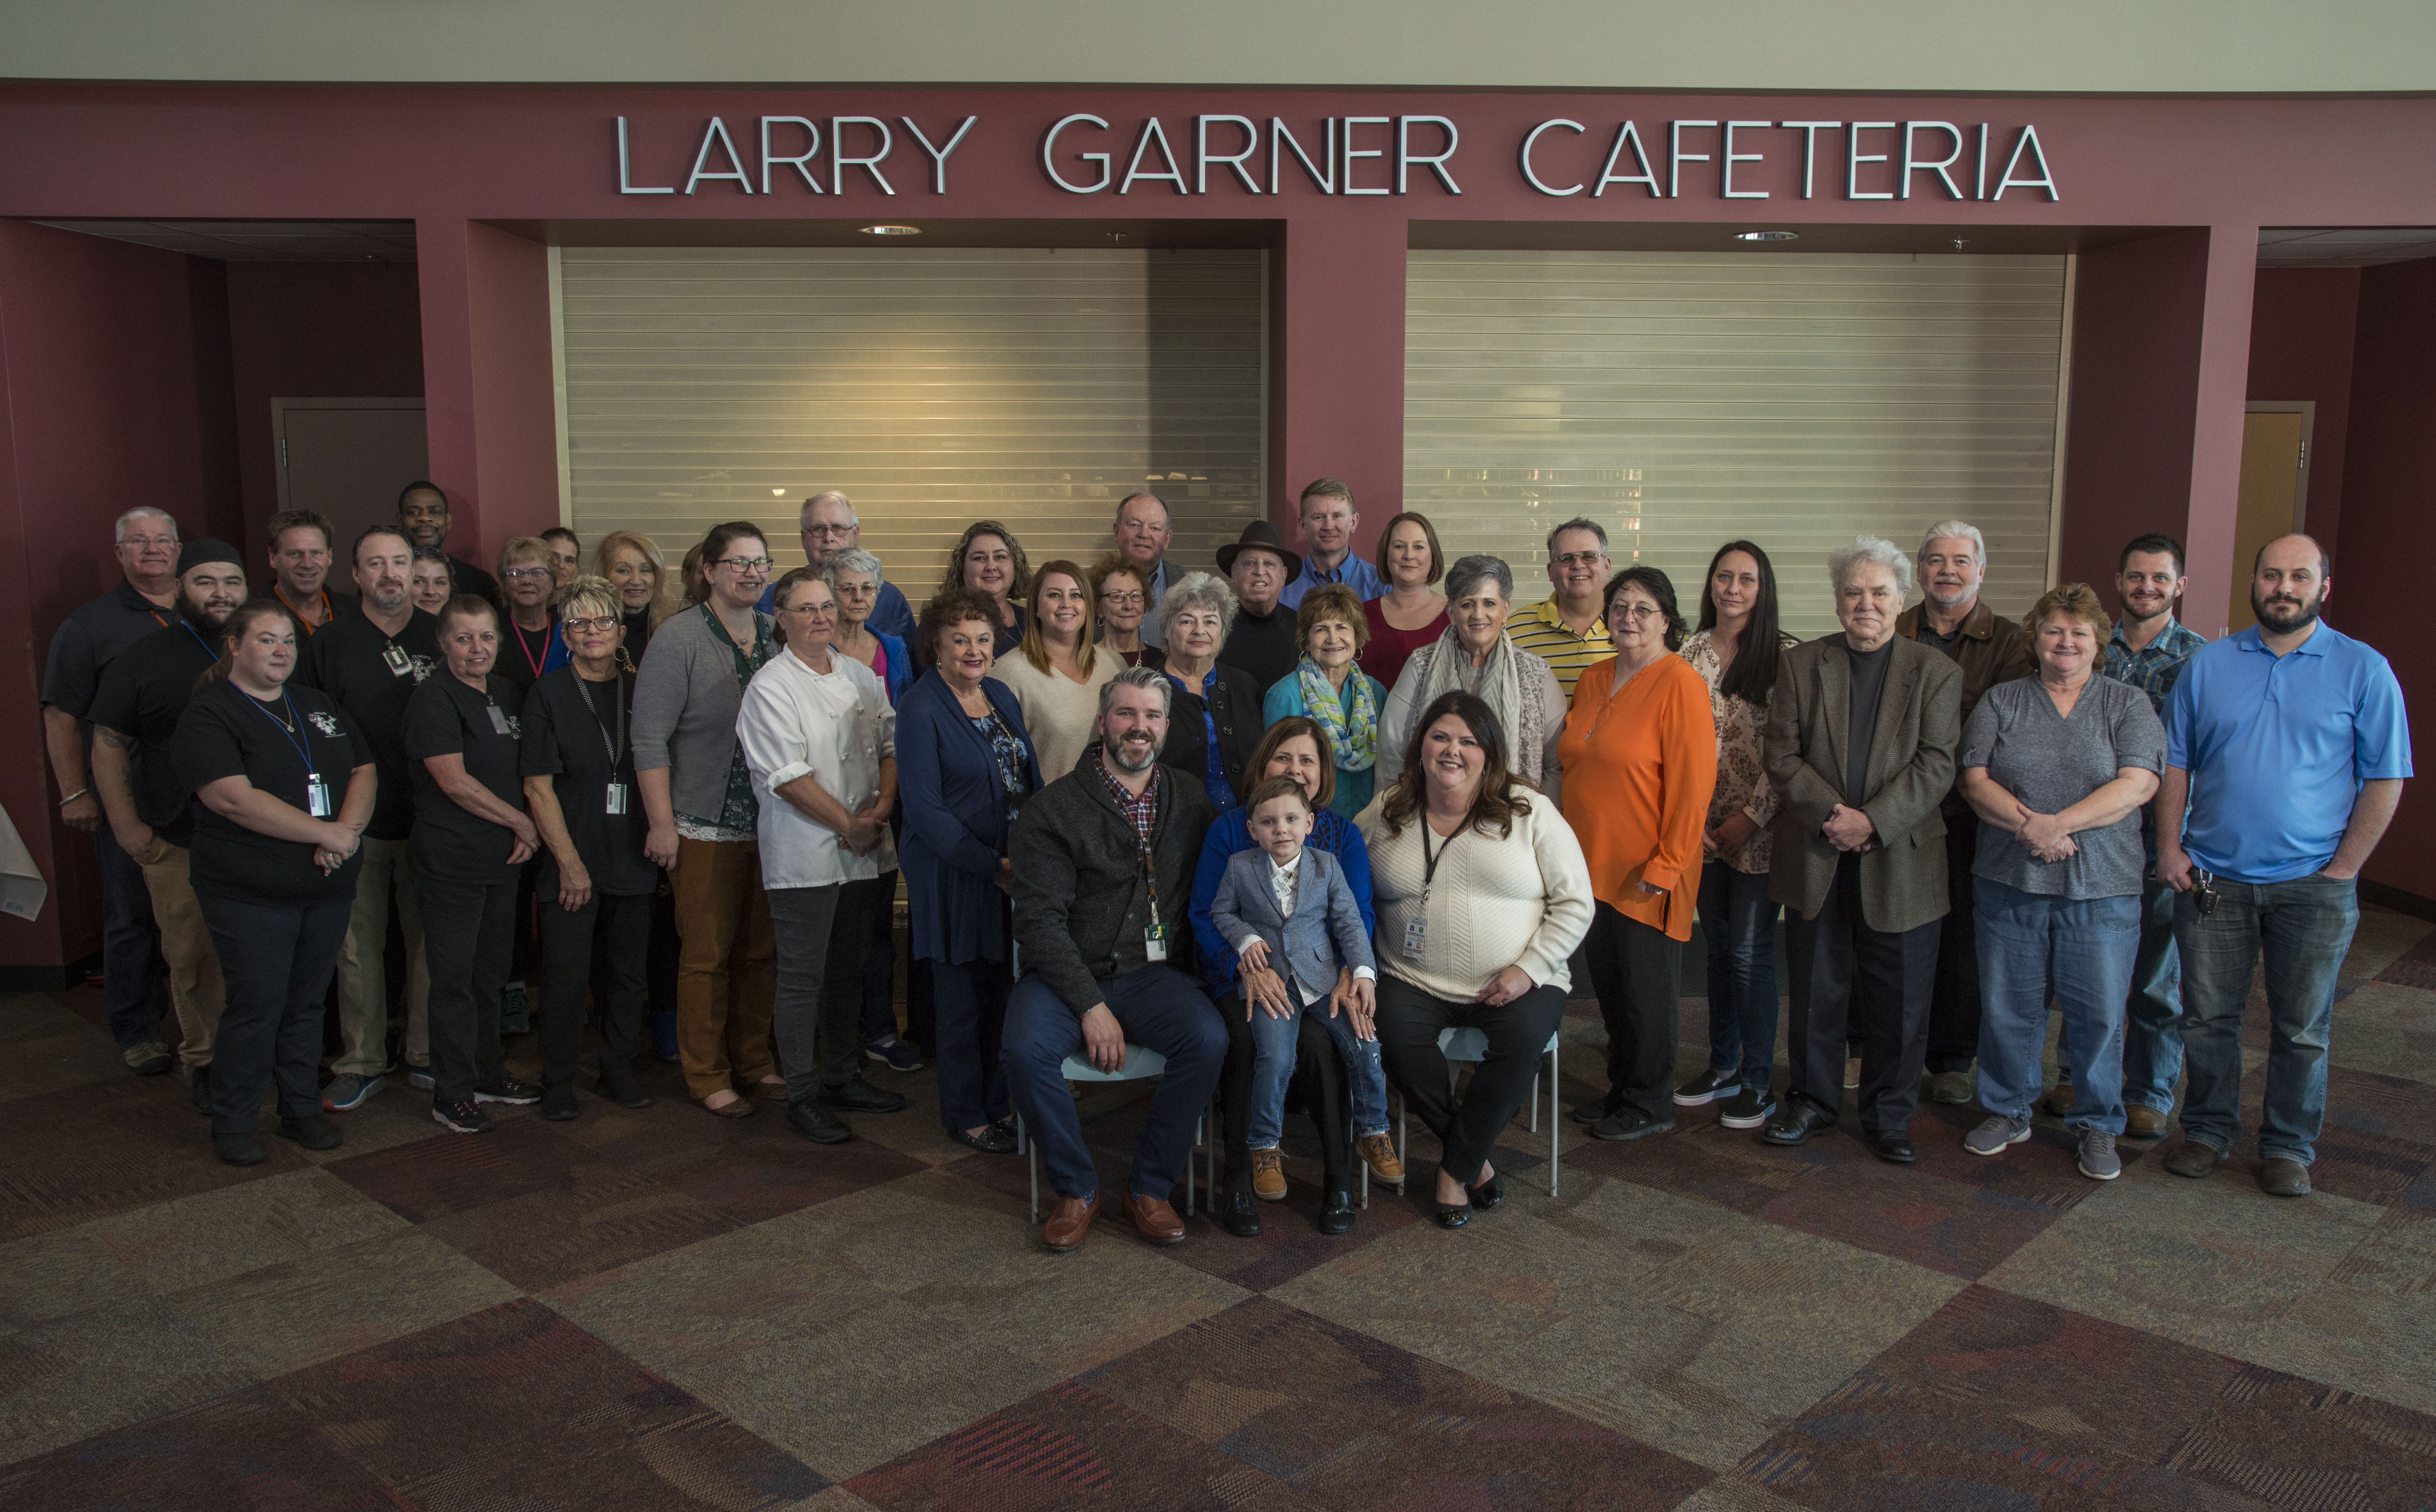  Y-12’s Jack Case Center cafeteria was named the Larry Garner Cafeteria in December 